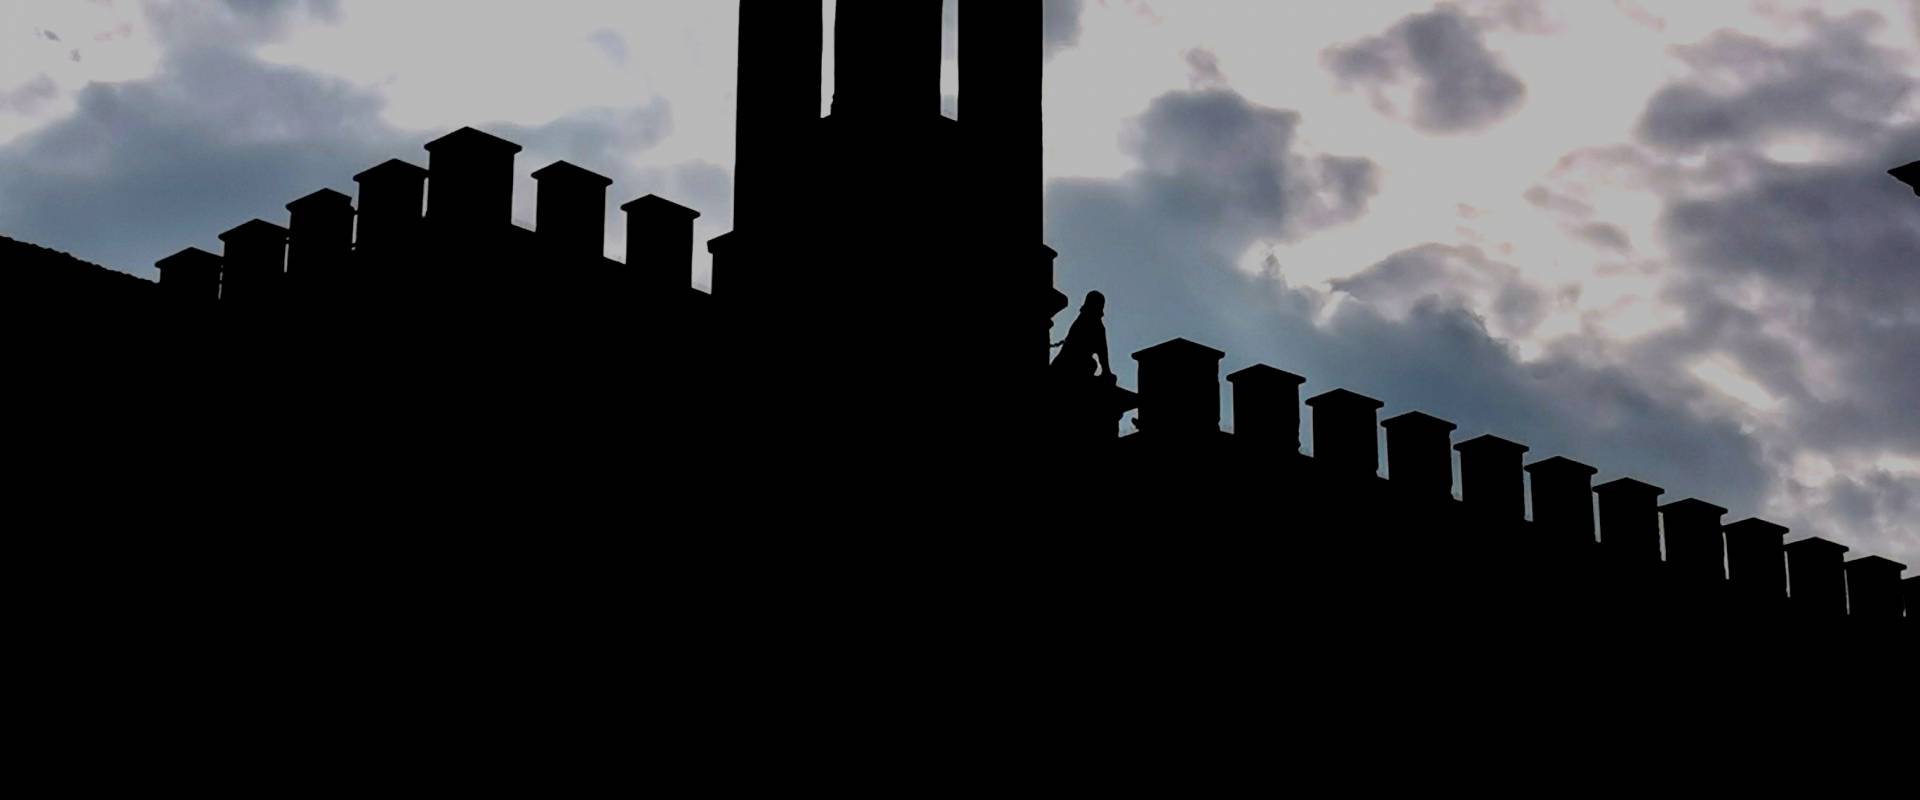 GALLERIA PARMEGGIANI una silhouette che squarcia il cielo photo by Stipa Jennifer